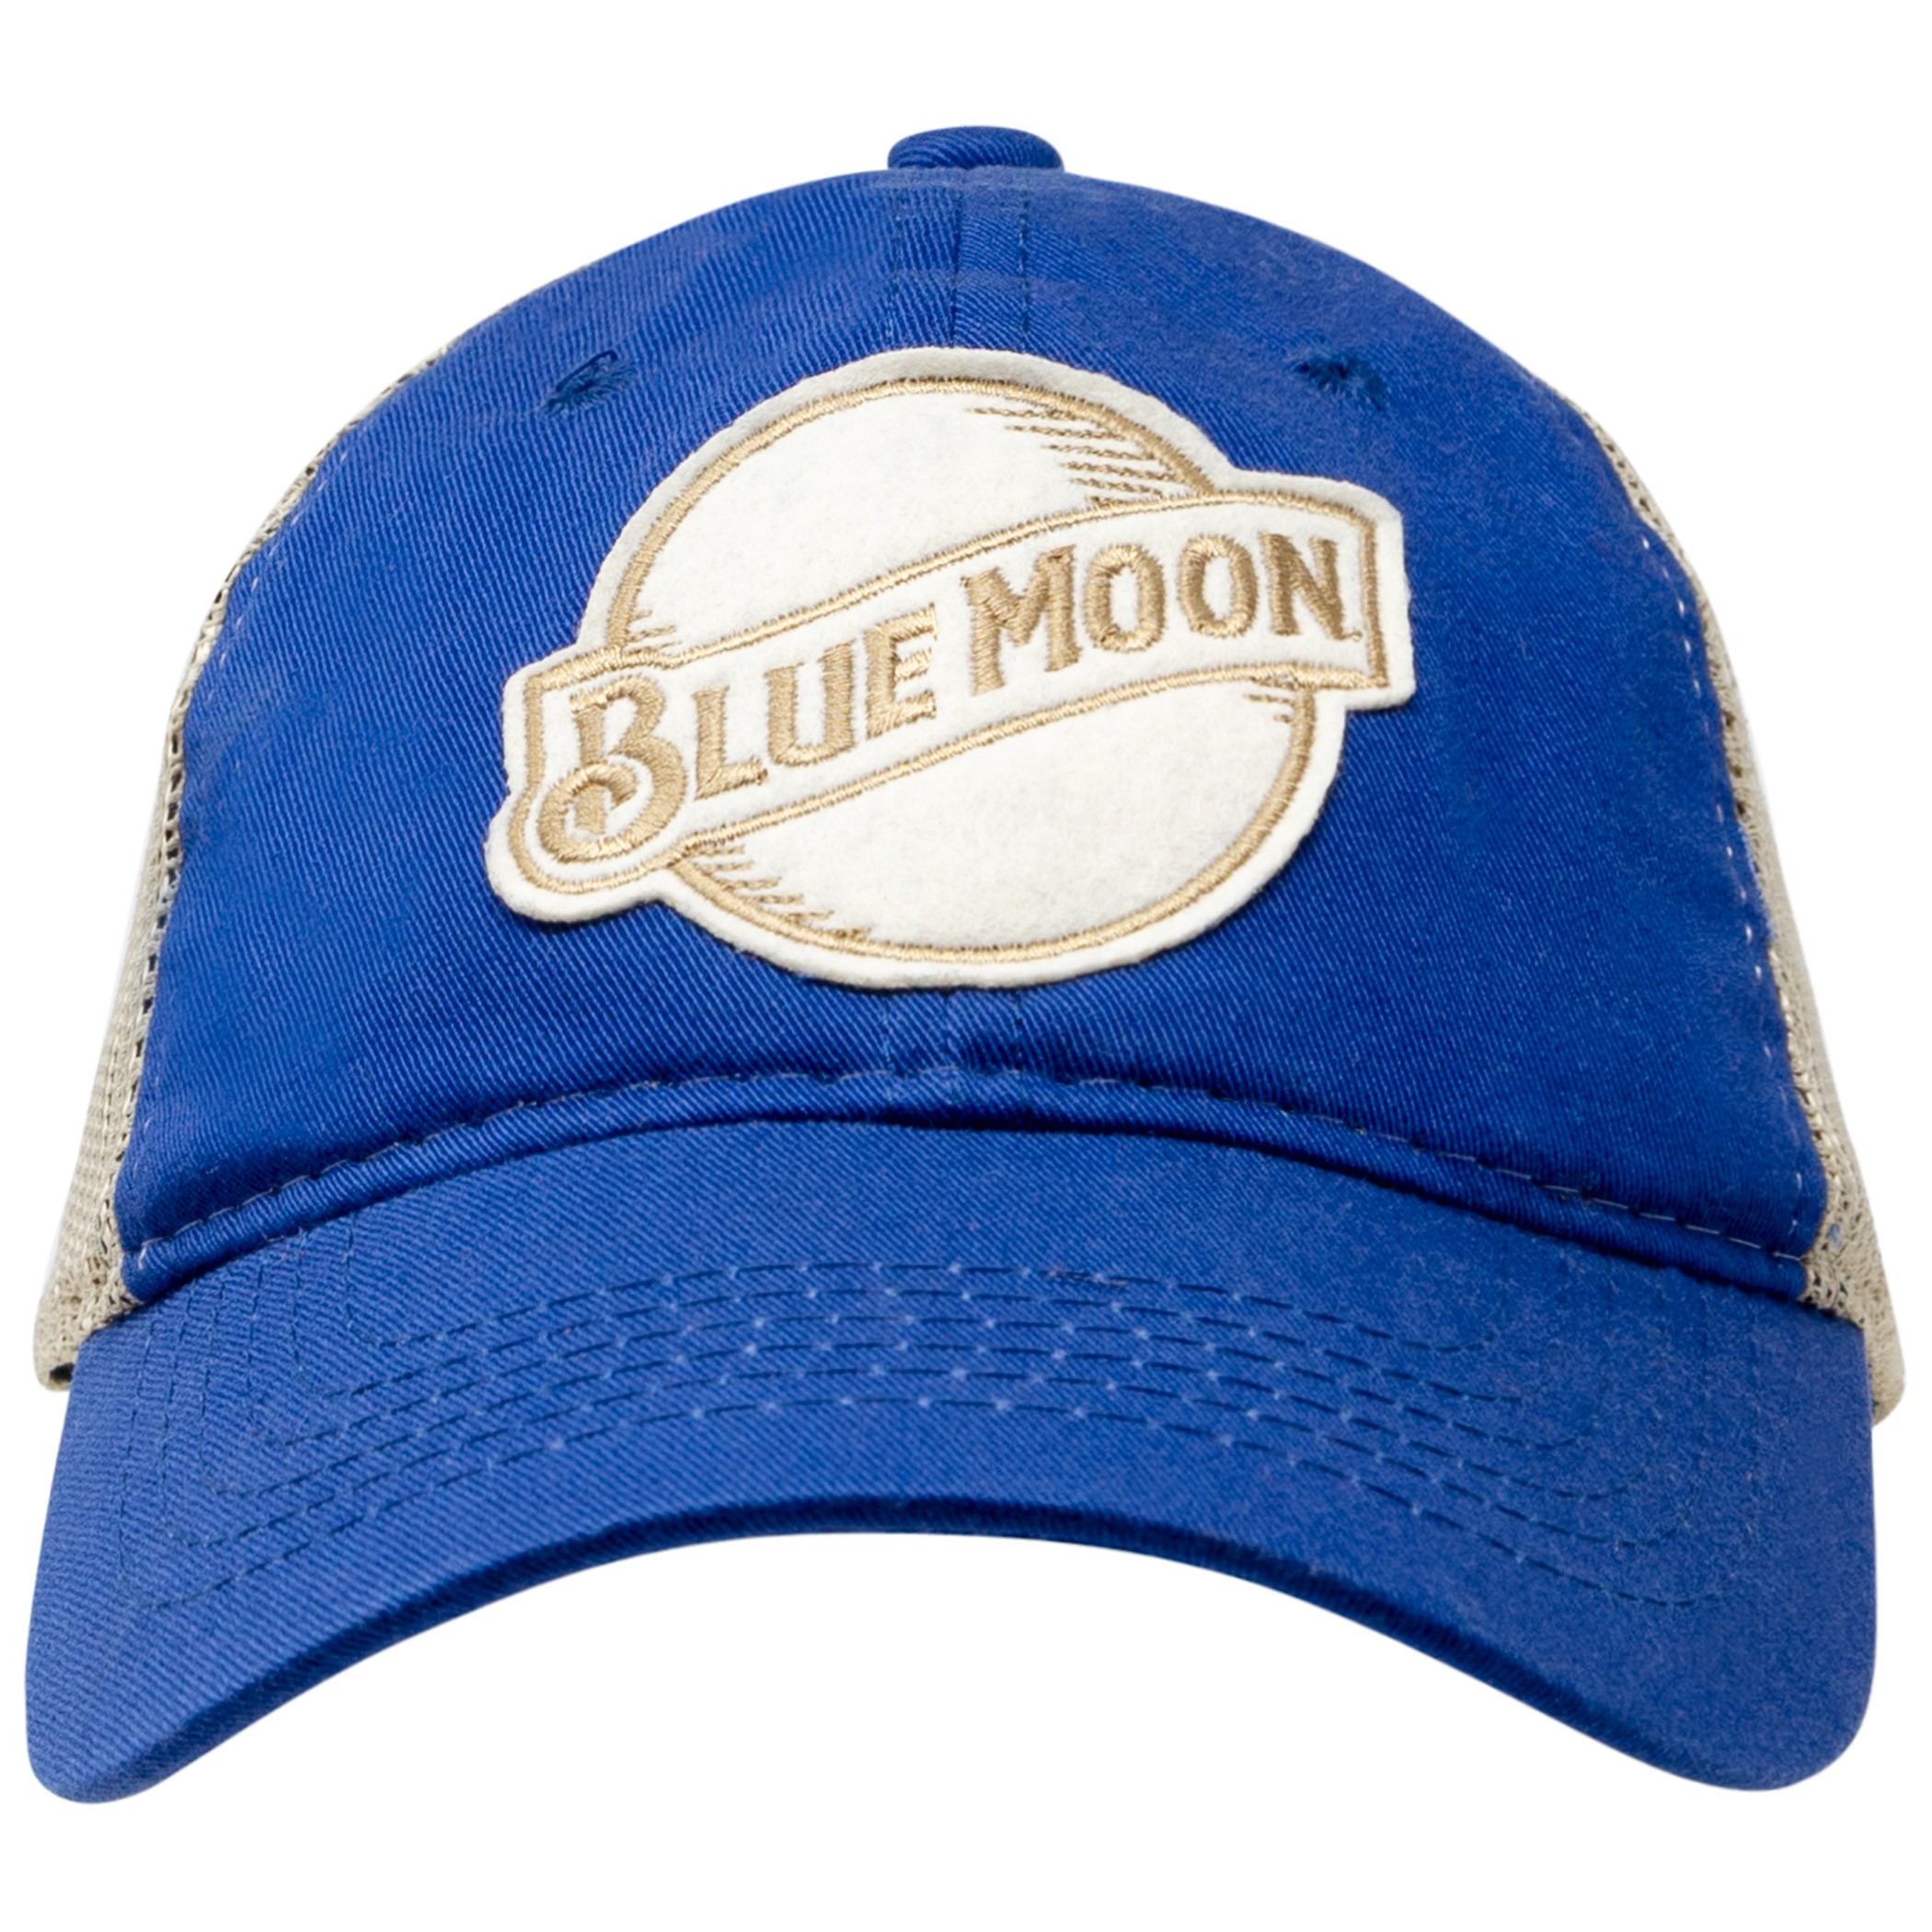 Blue Moon Mesh Blue Trucker Hat